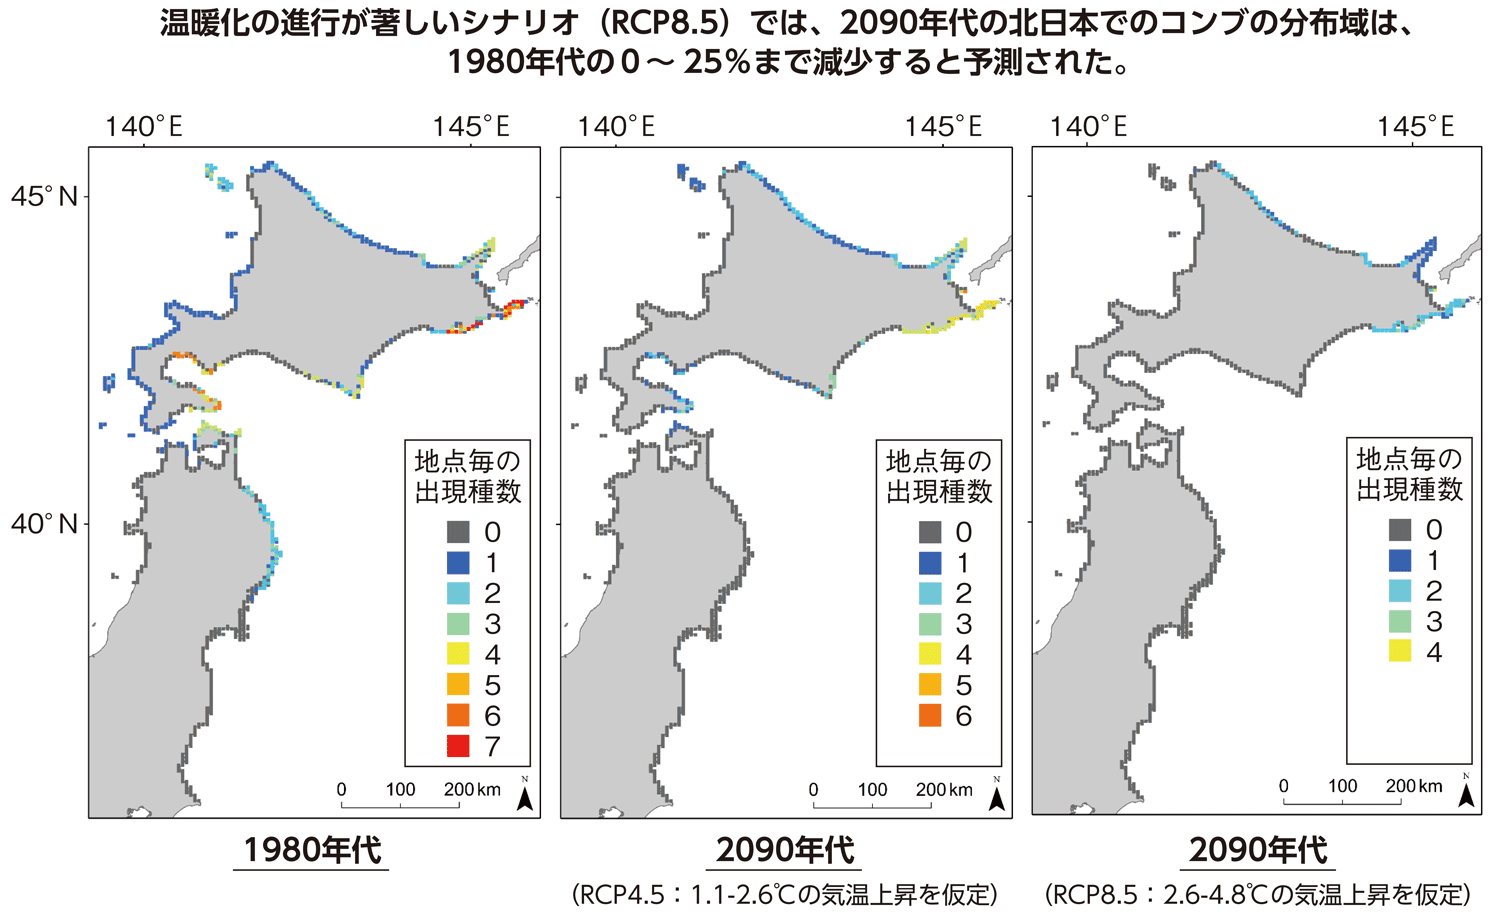 図特-1-10 北日本におけるコンブ類11種の種多様性の変化予測